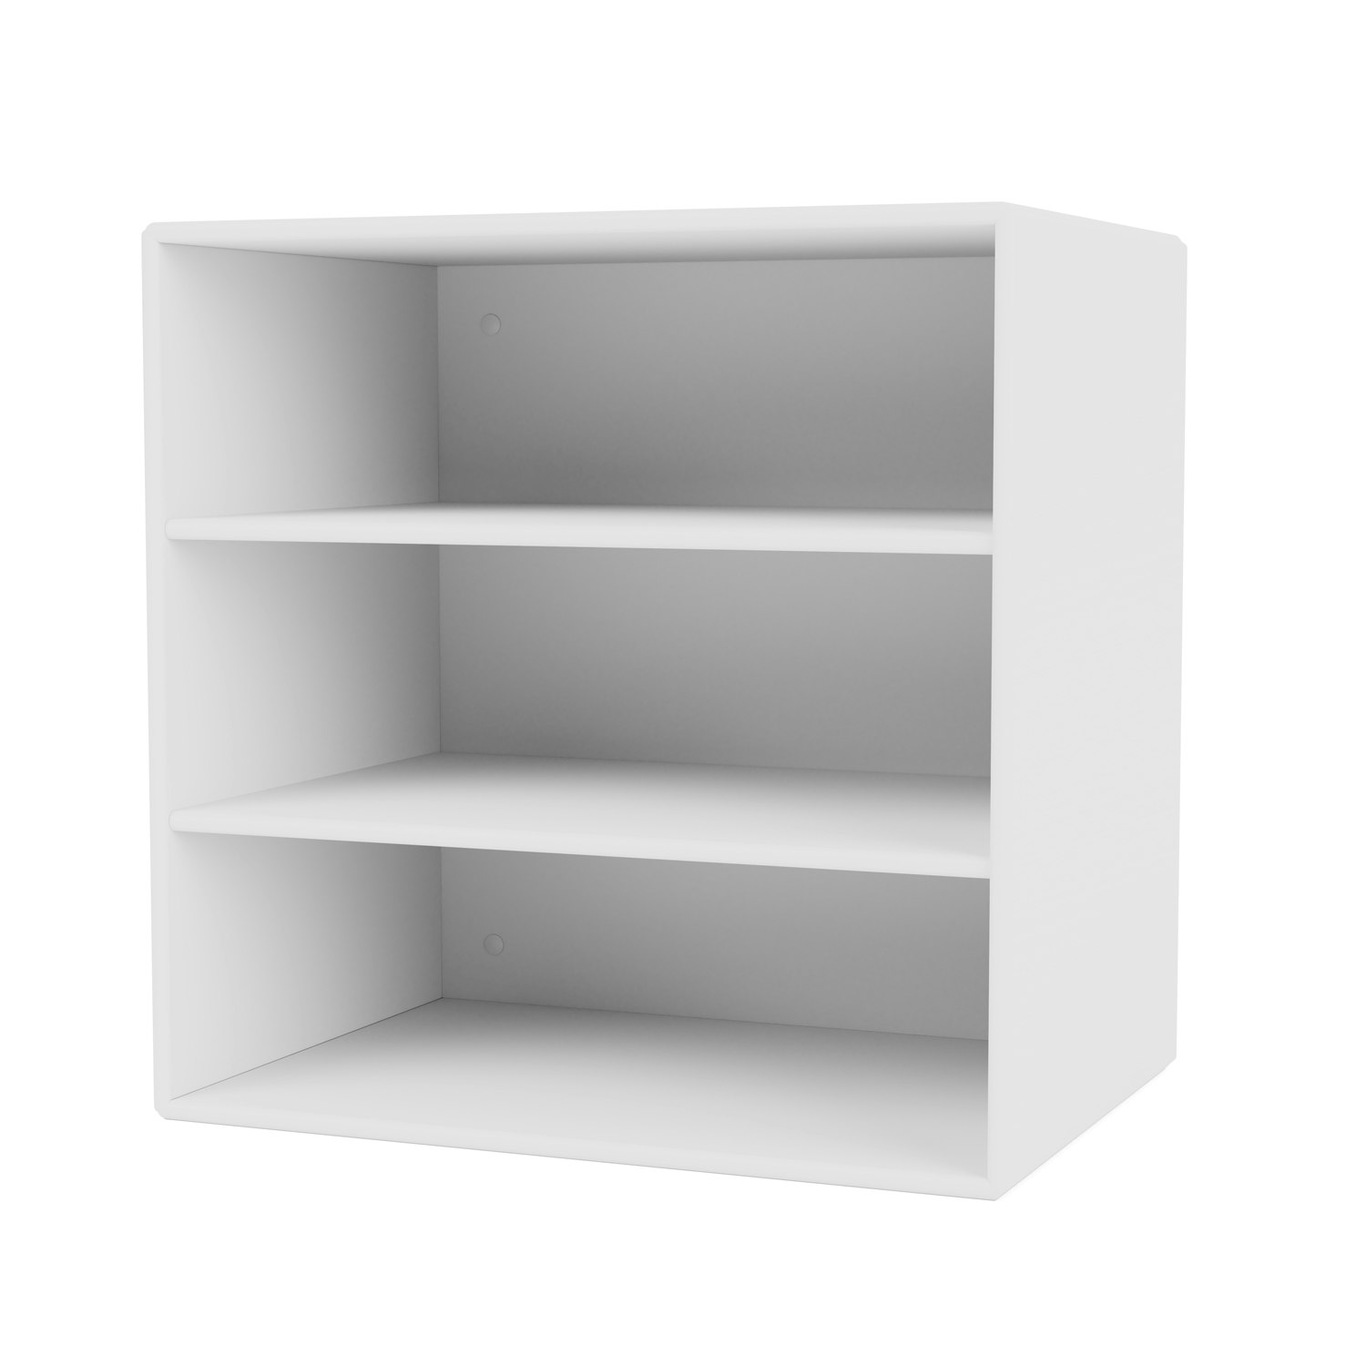 Mini Shelf Shelves 1004 , New White